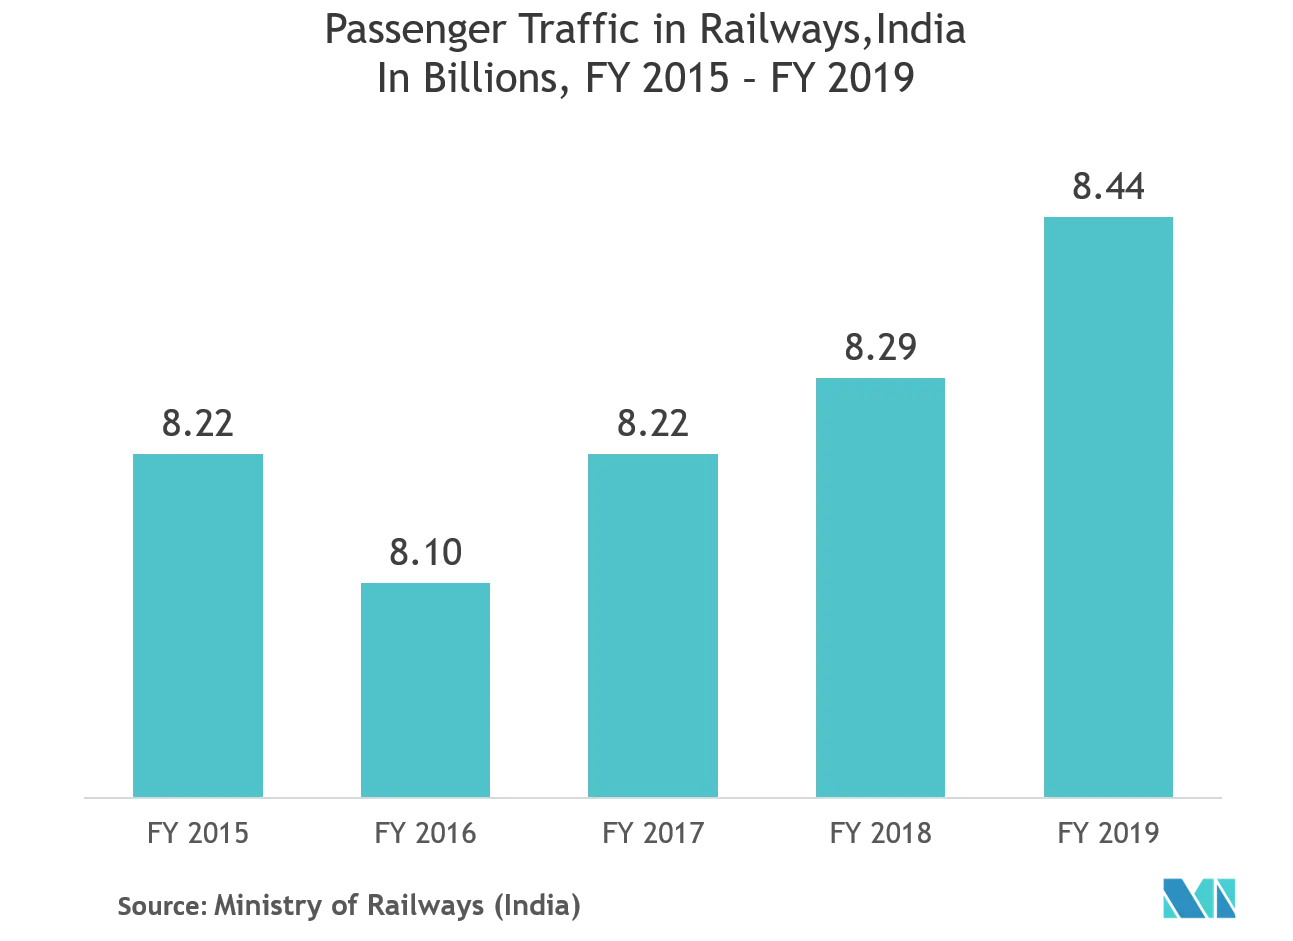 Railway Management System Market - Passanger Traffic in Railways, India in Billion, FY 2025 - 2019